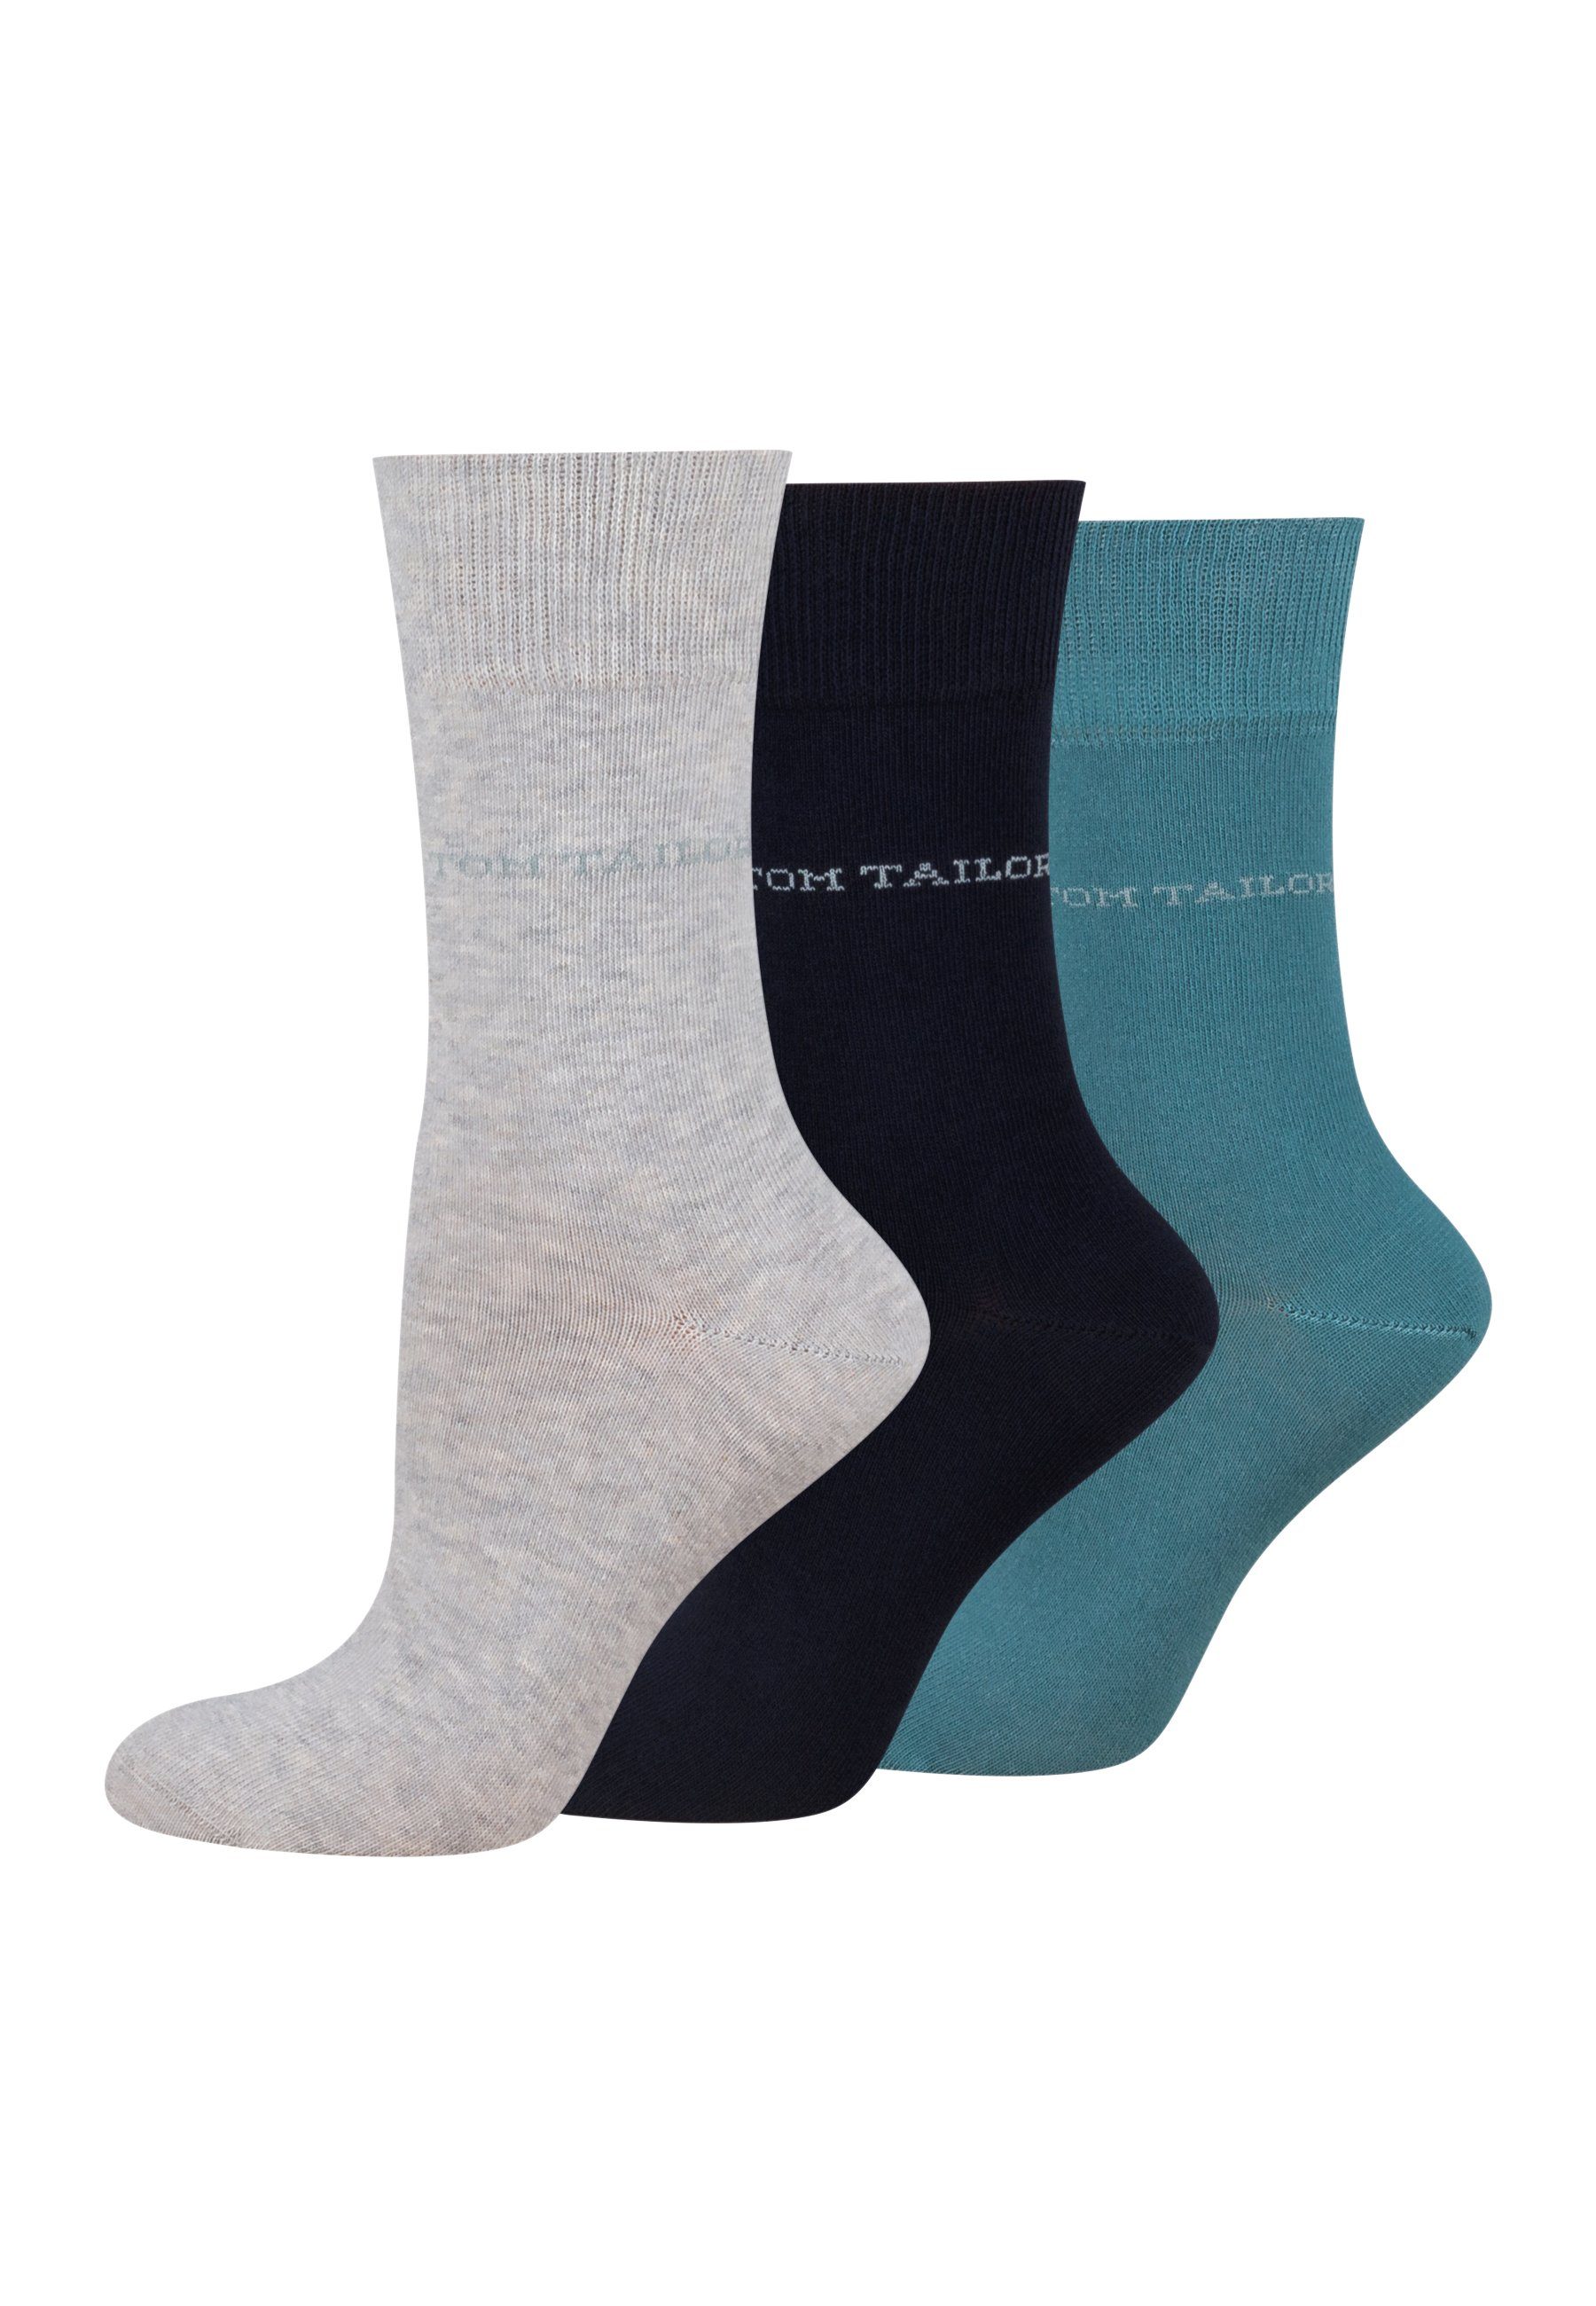 TOM TAILOR Socken 9609820042 TOM TAILOR Socken Damen – Baumwollsocken für Alltag und Freizeit warmgrey